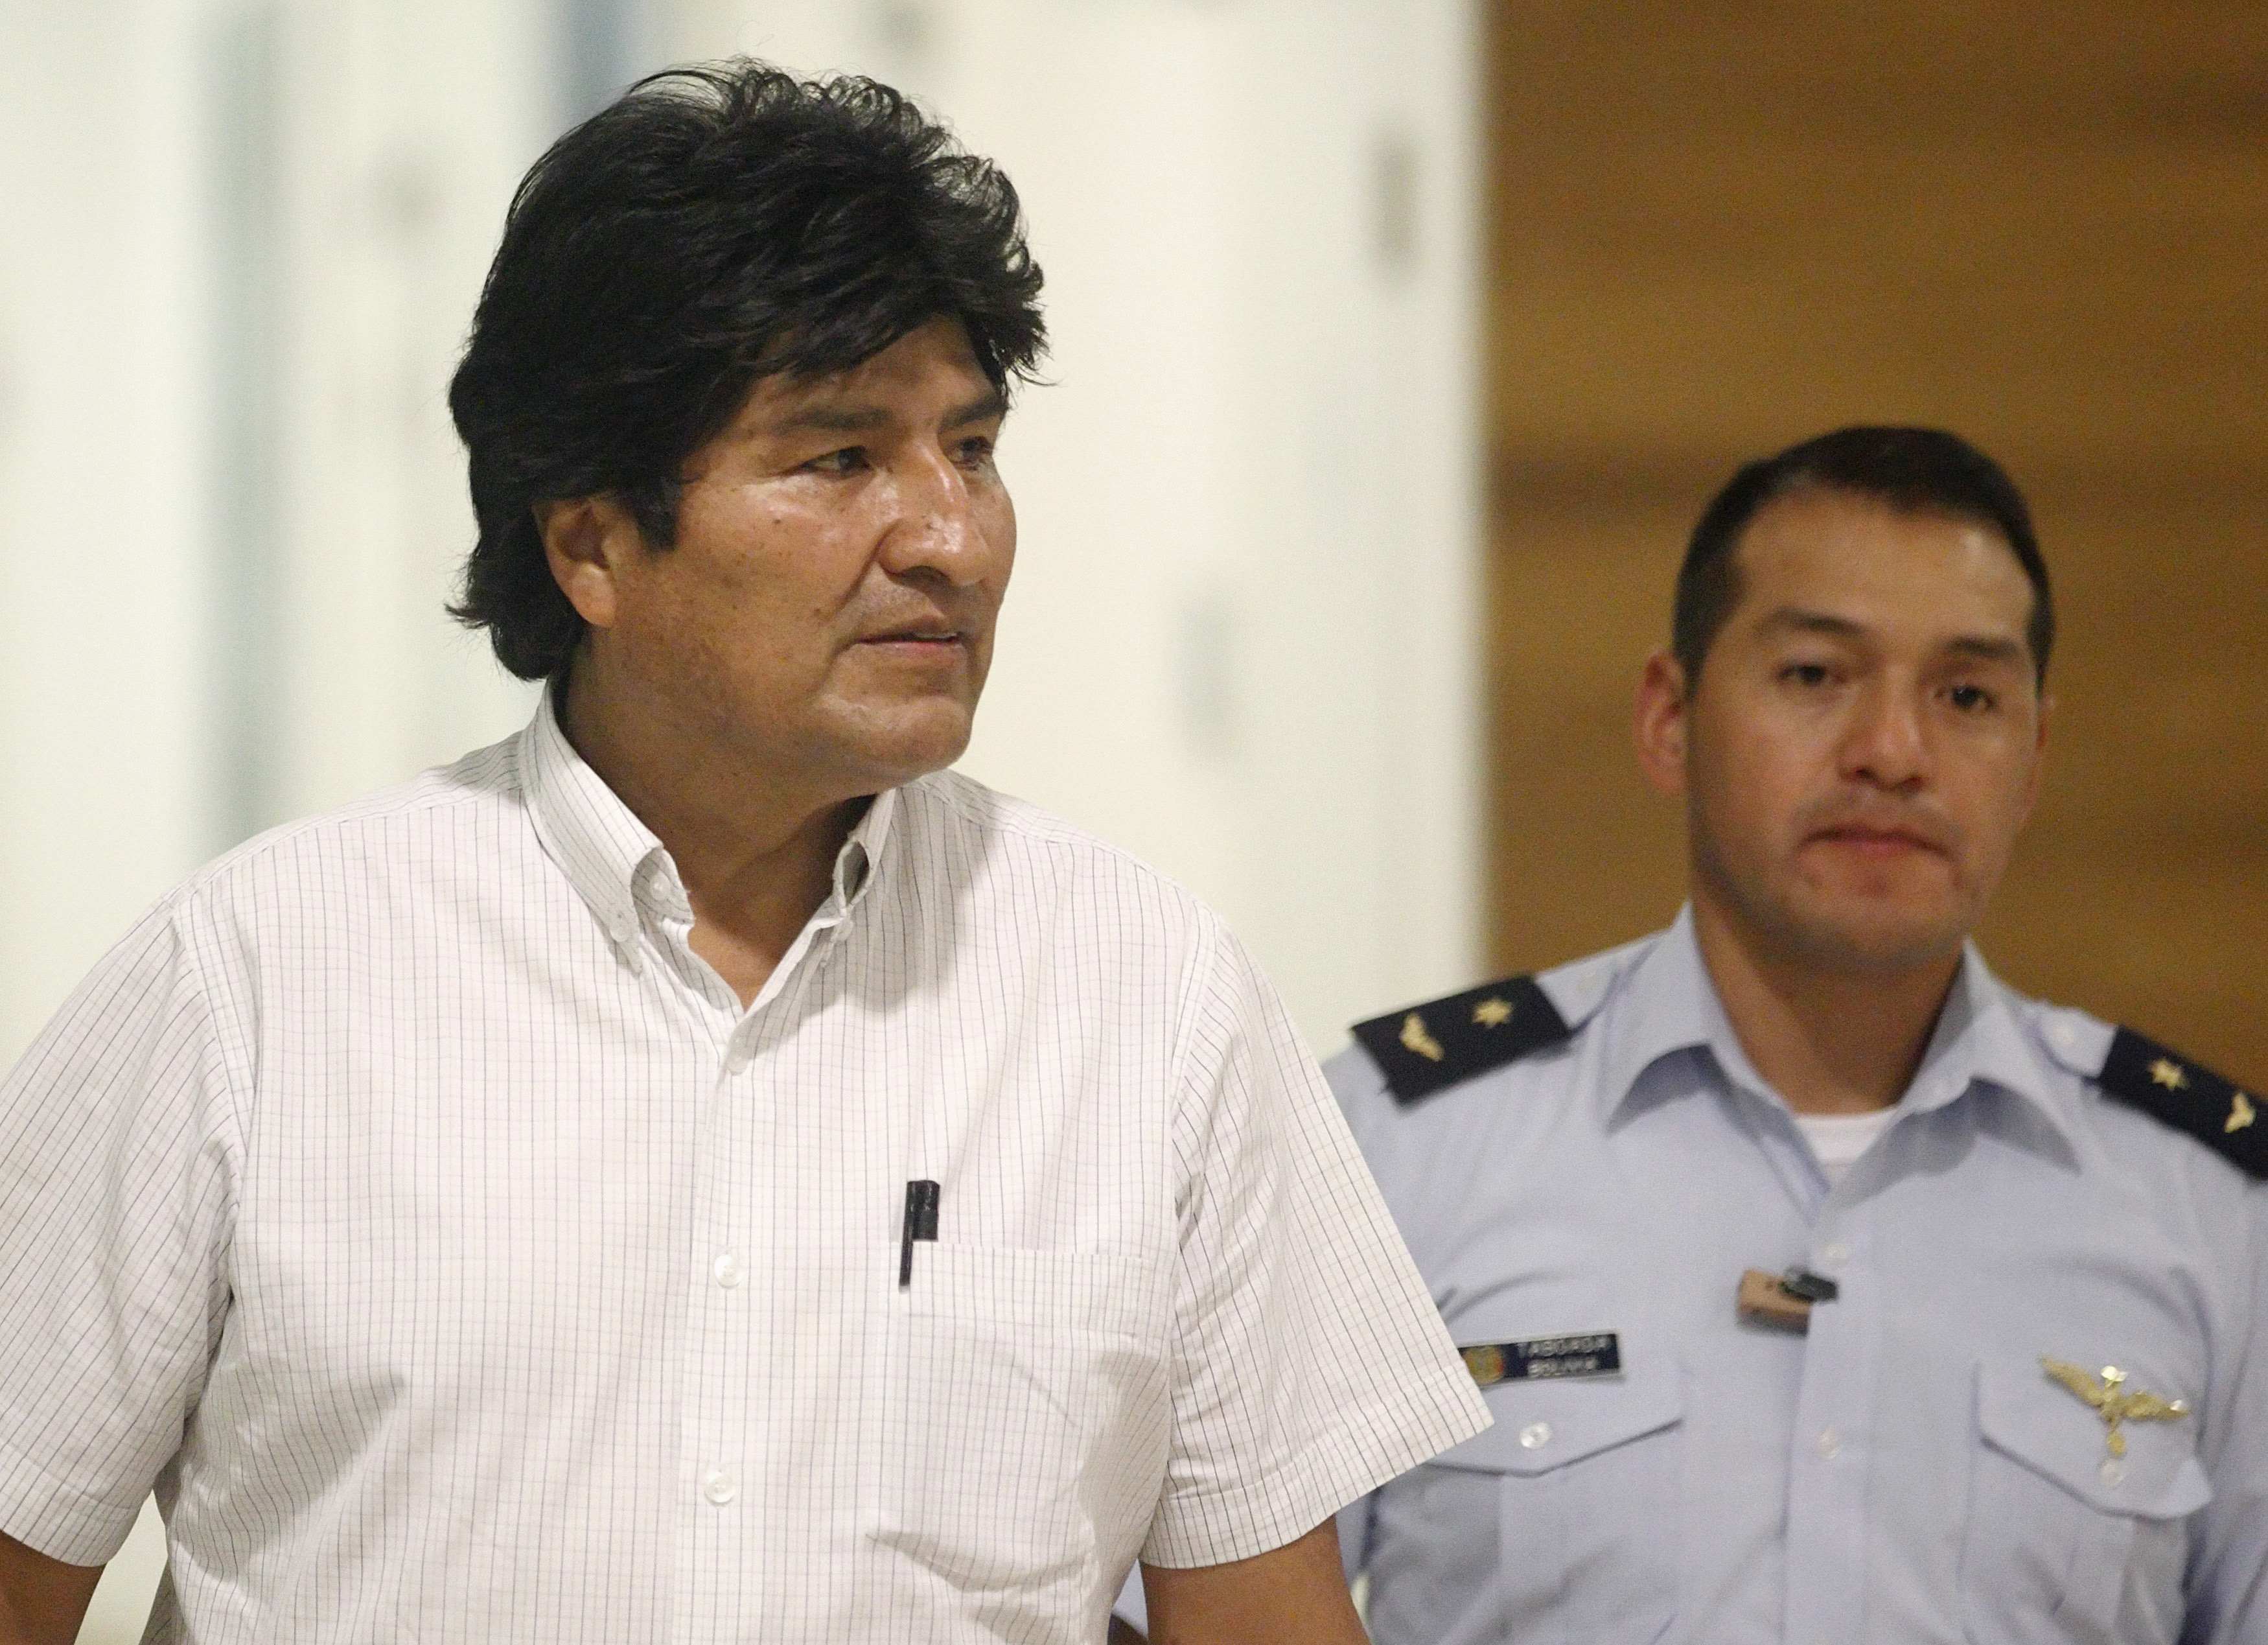 Las FOTOS: Evo Morales varado en Viena